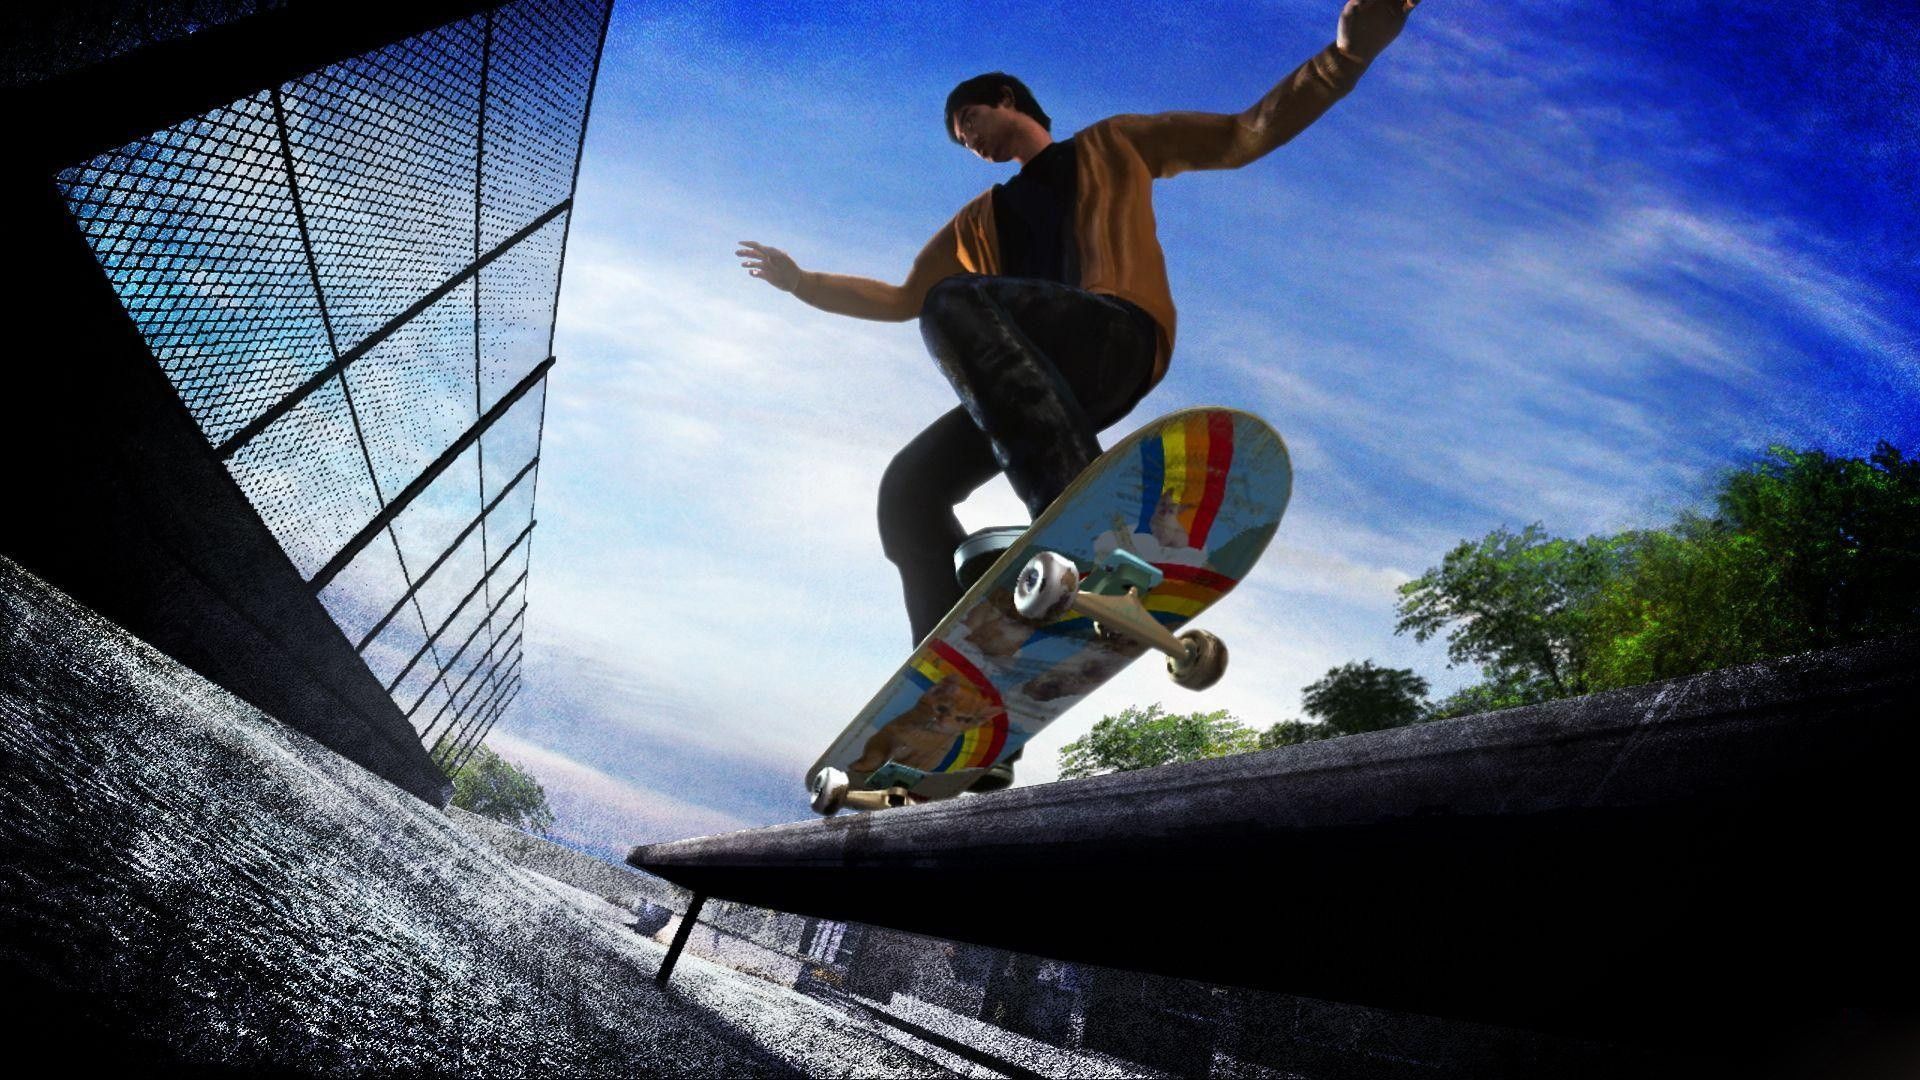 free desktop skateboard wallpaper download. Trend. Go skateboarding day, Skateboard, Skateboard companies